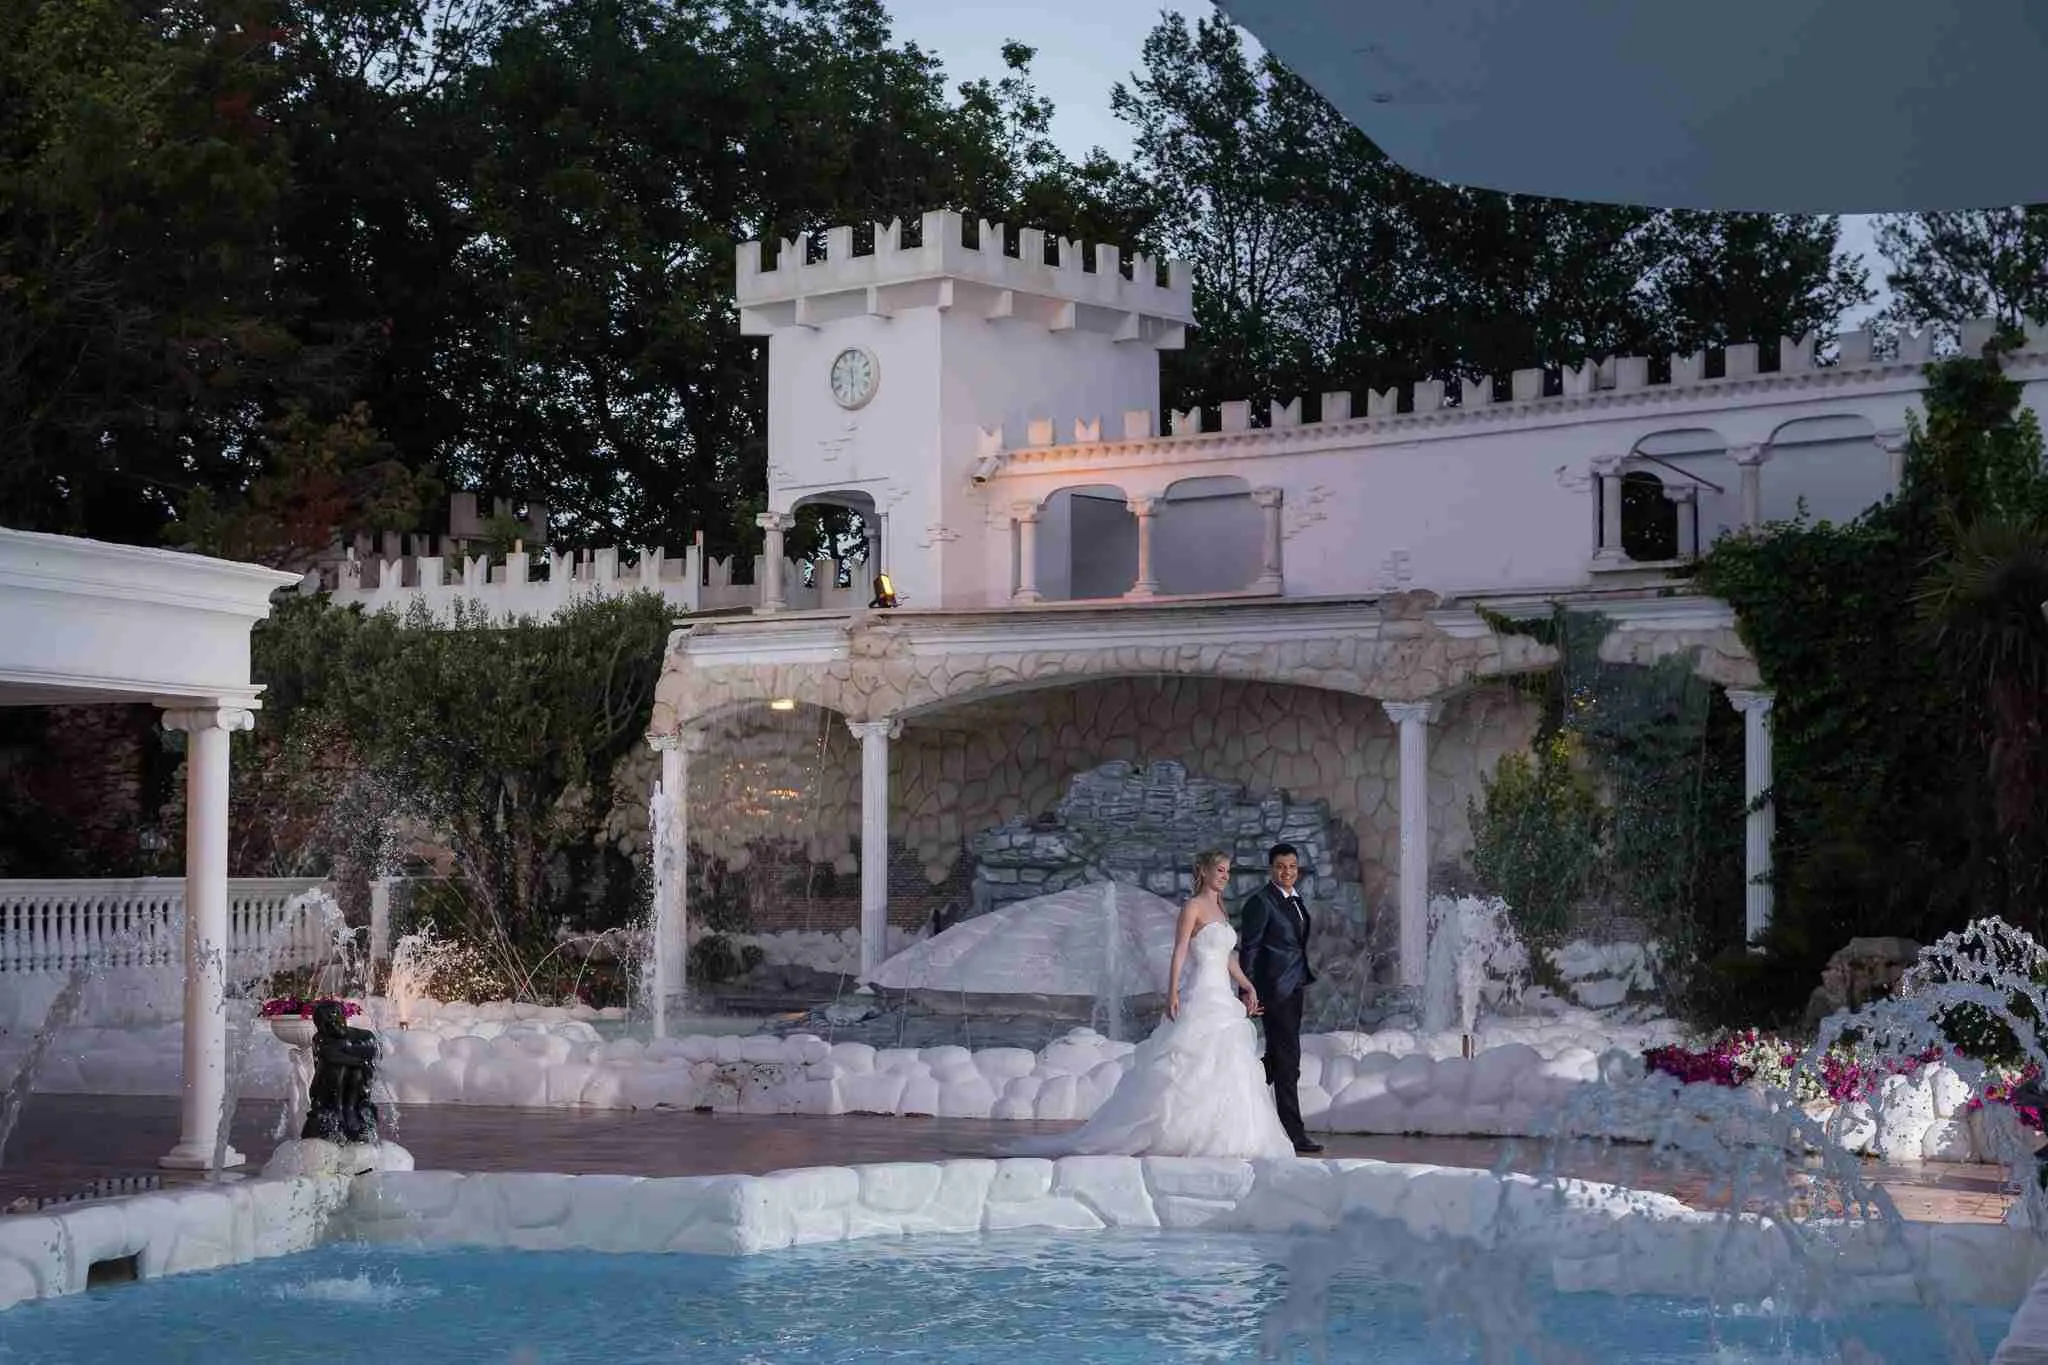 Matrimonio in Villa lago dei cigni: Esterni, giardino e piscina